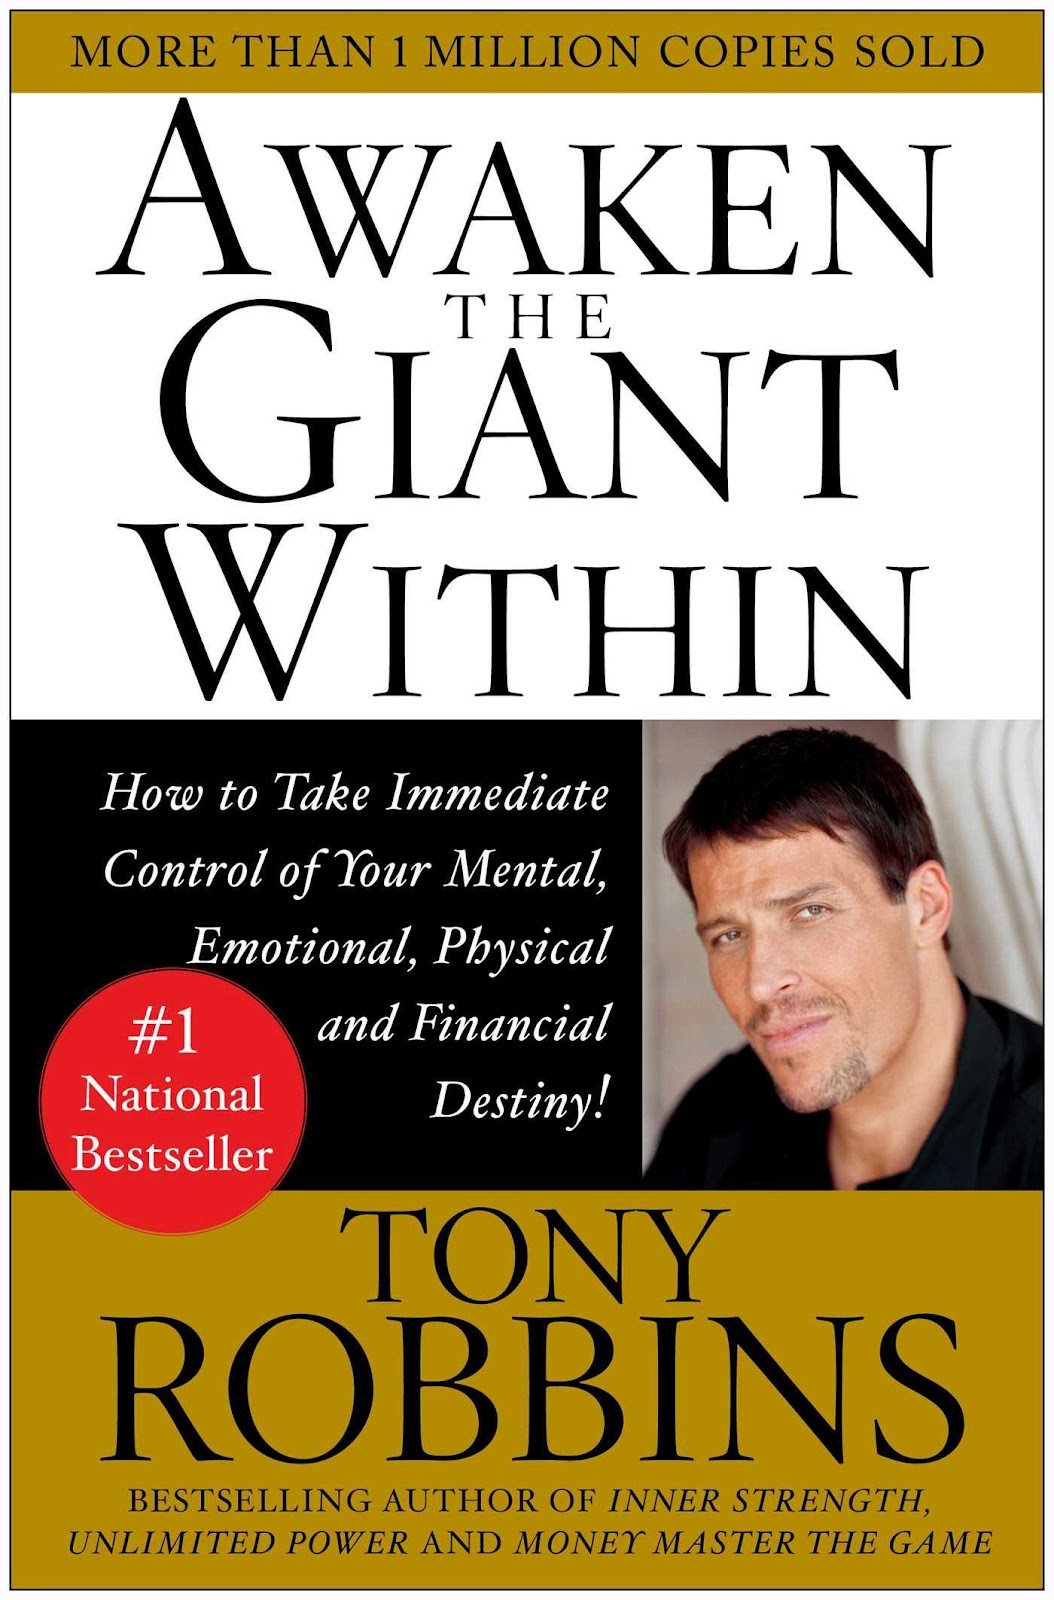 Book "Awaken the giant within"